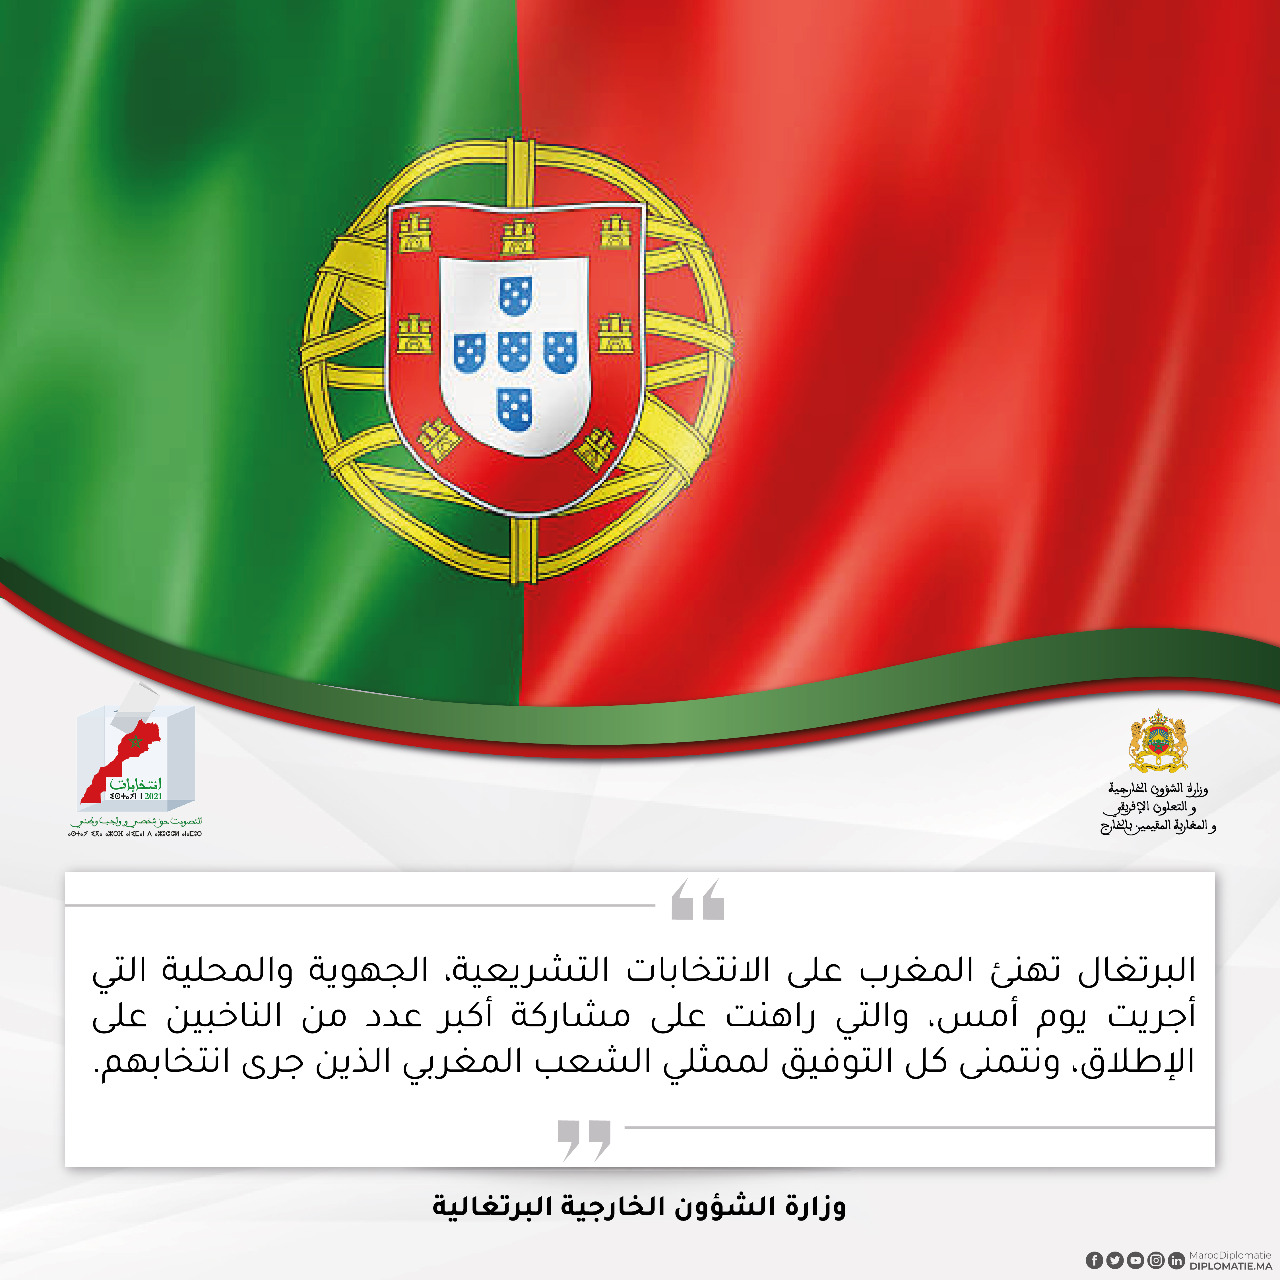  وزارة الشؤون الخارجية البرتغالية 